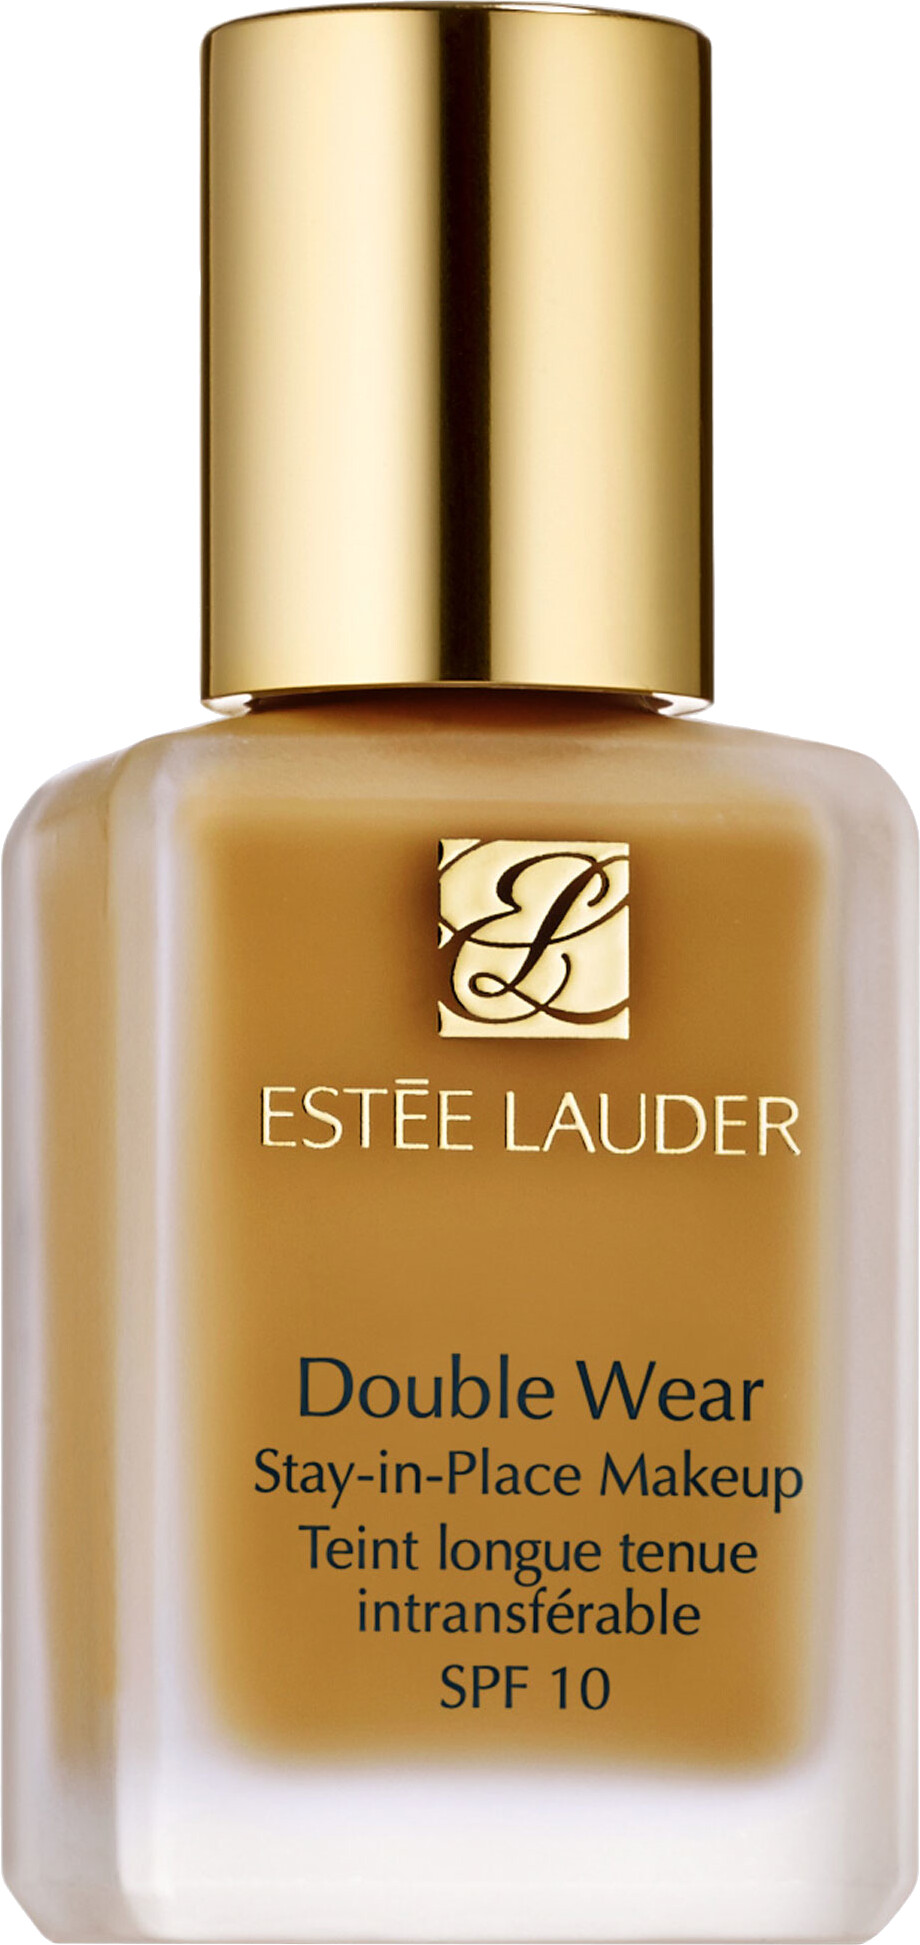 Estee Lauder Double Wear Stay-in-Place Foundation SPF10 30ml 4W4 - Hazel